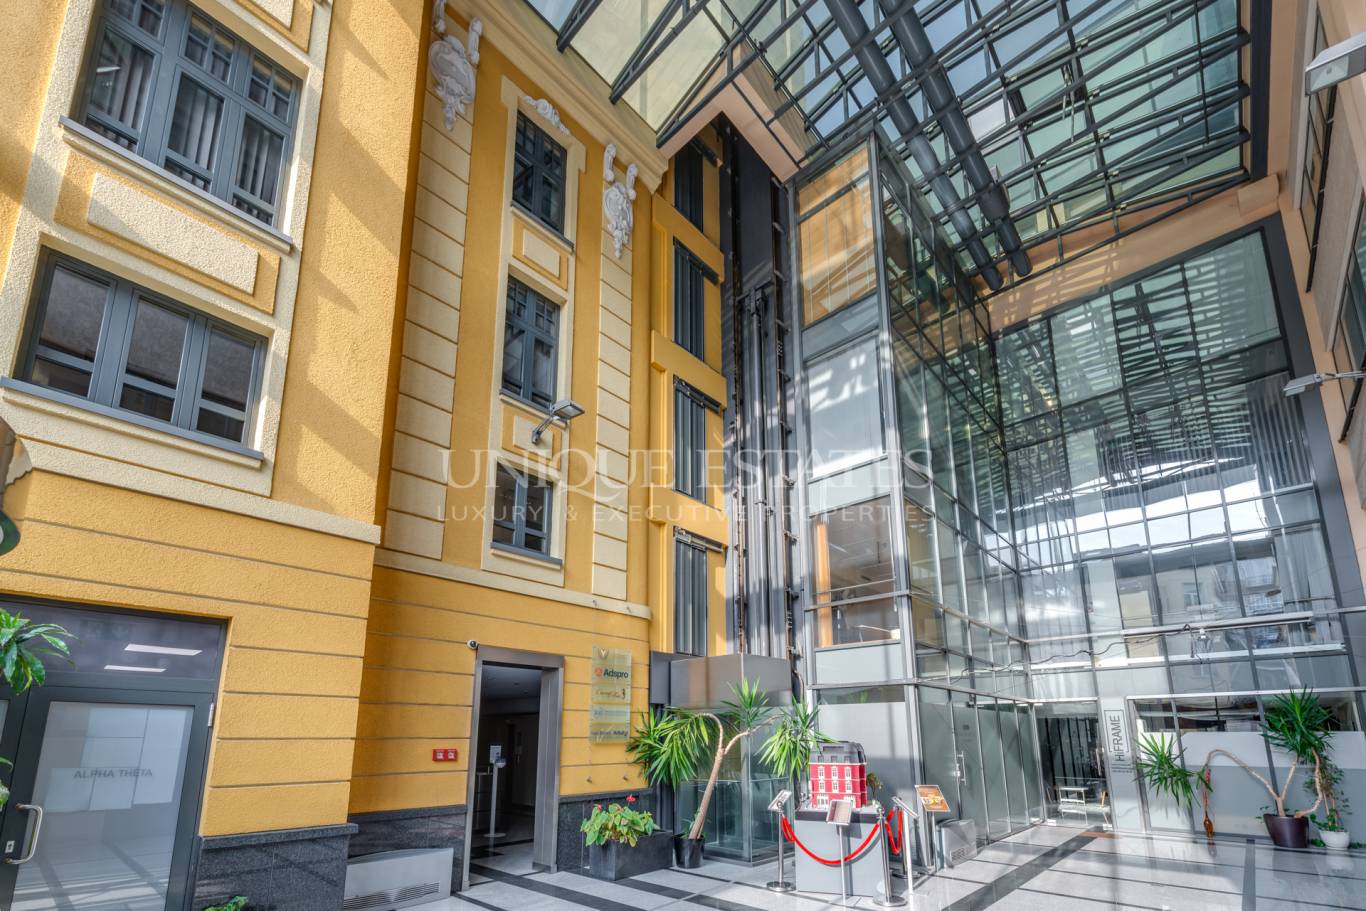 Офис под наем в София, Център - код на имота: K14005 - image 1